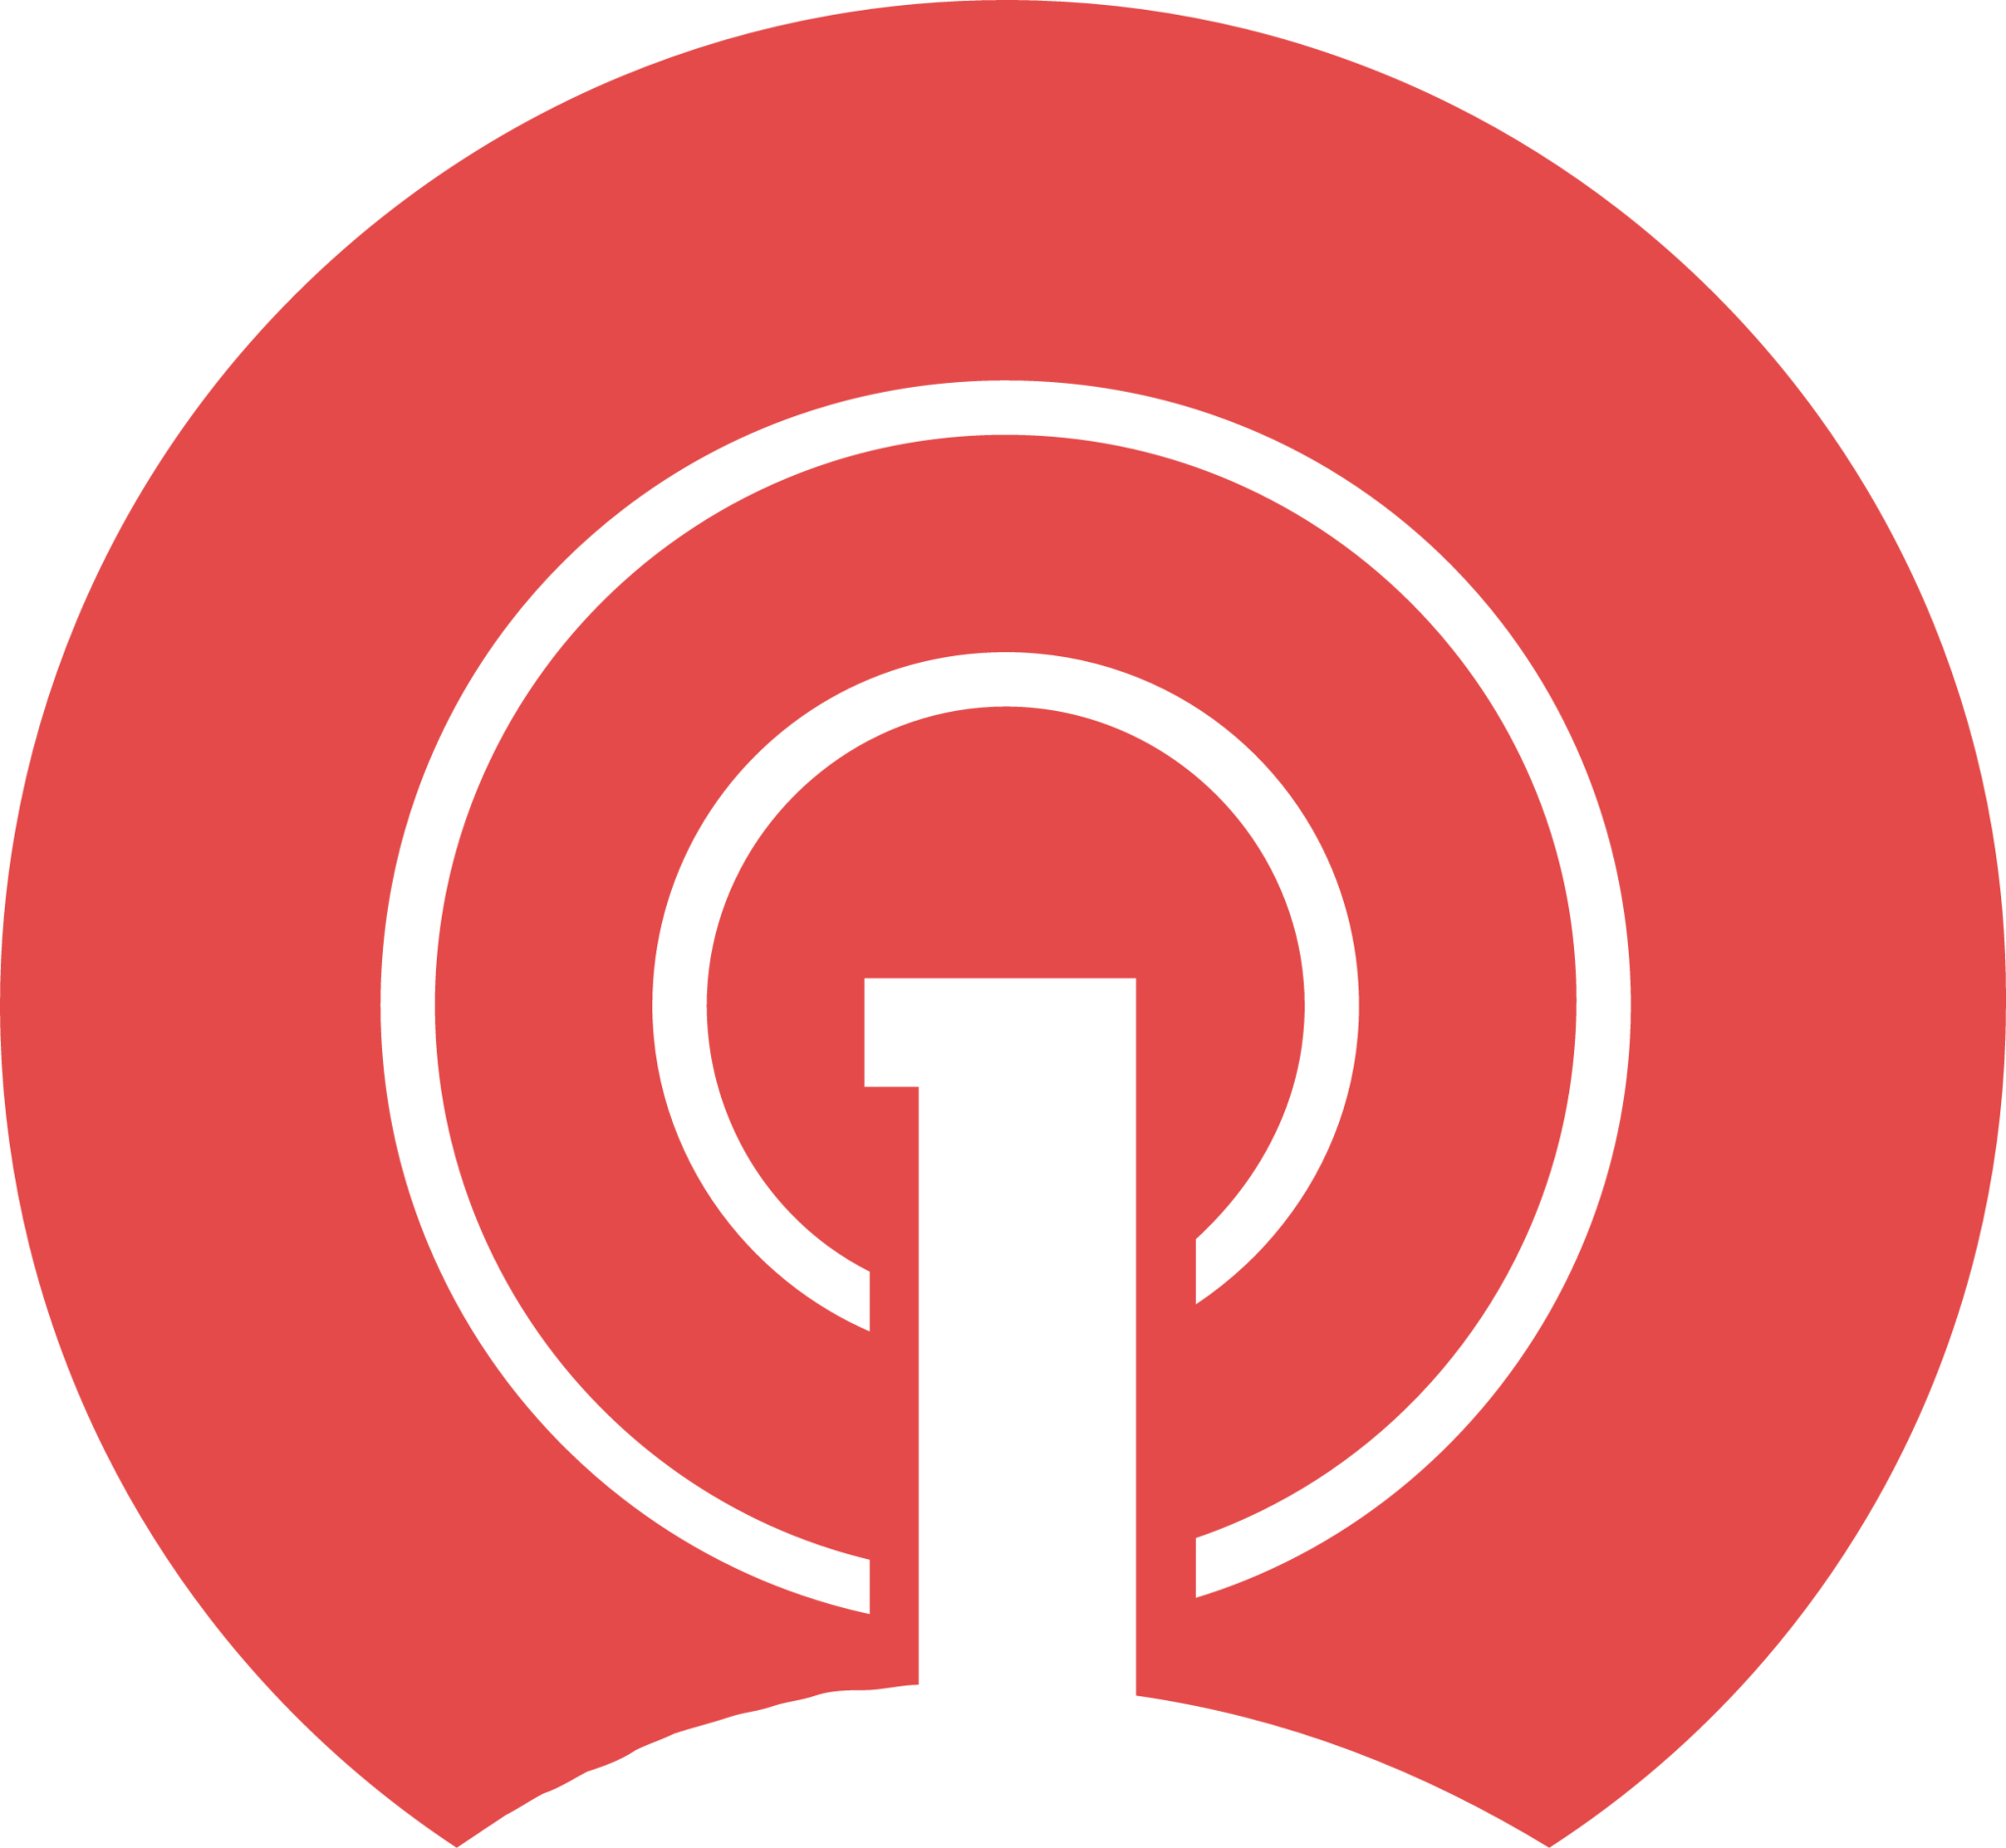 OneSignal icon